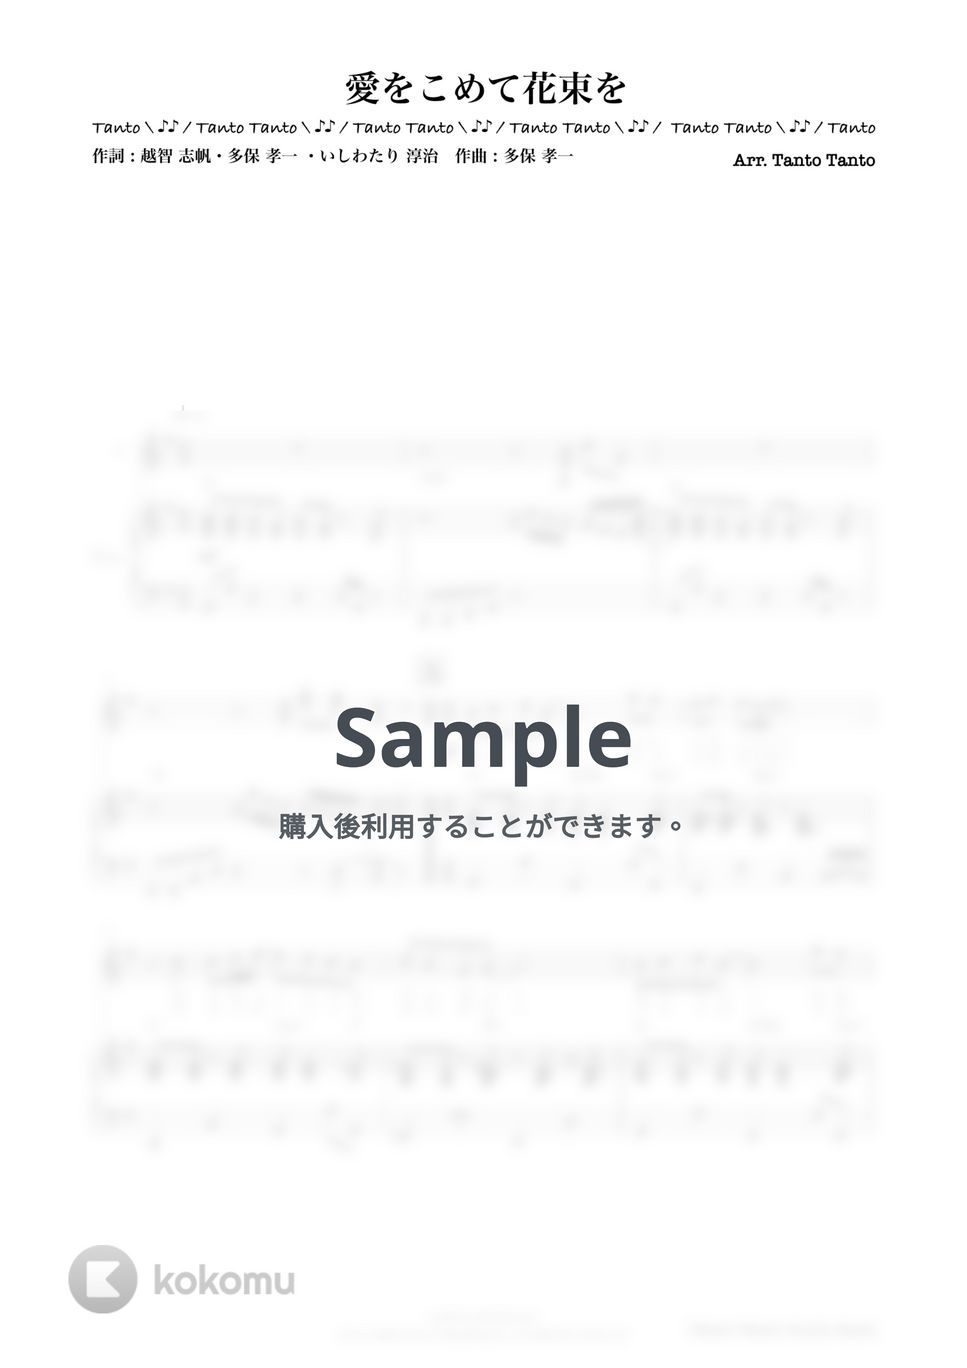 Superfly - 愛をこめて花束を (中上級 Kenhamo & Piano Ensemble in G→A) by Tanto Tanto